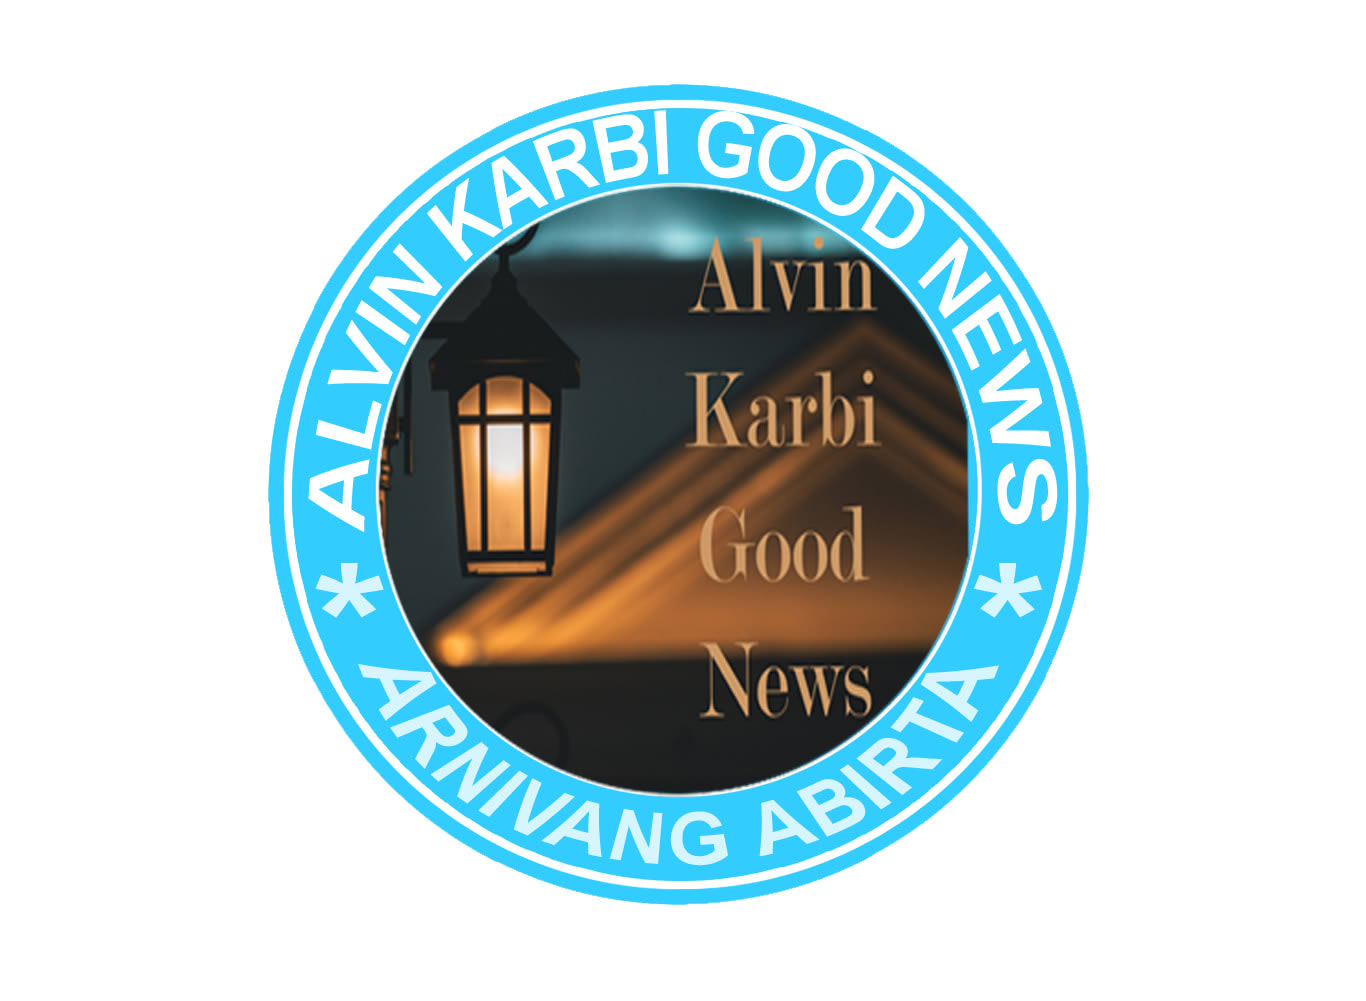 Alvin Karbi Good News